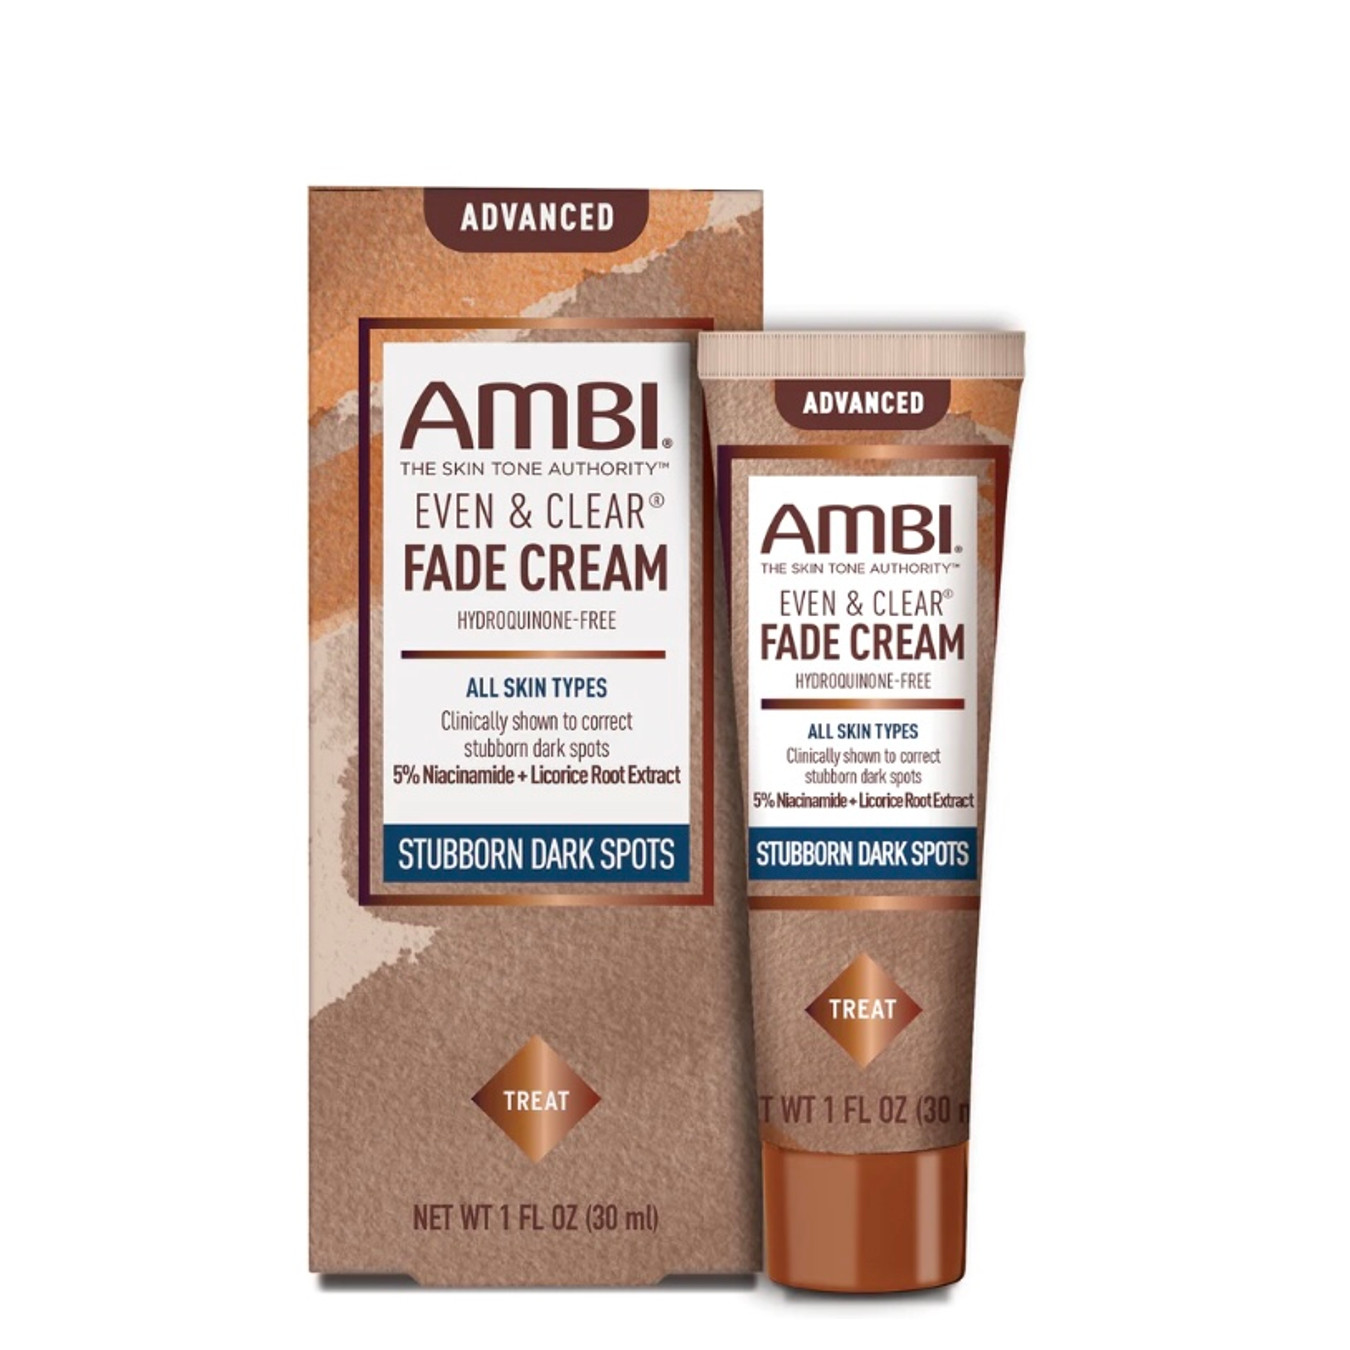 Ambi Advanced Fade Cream